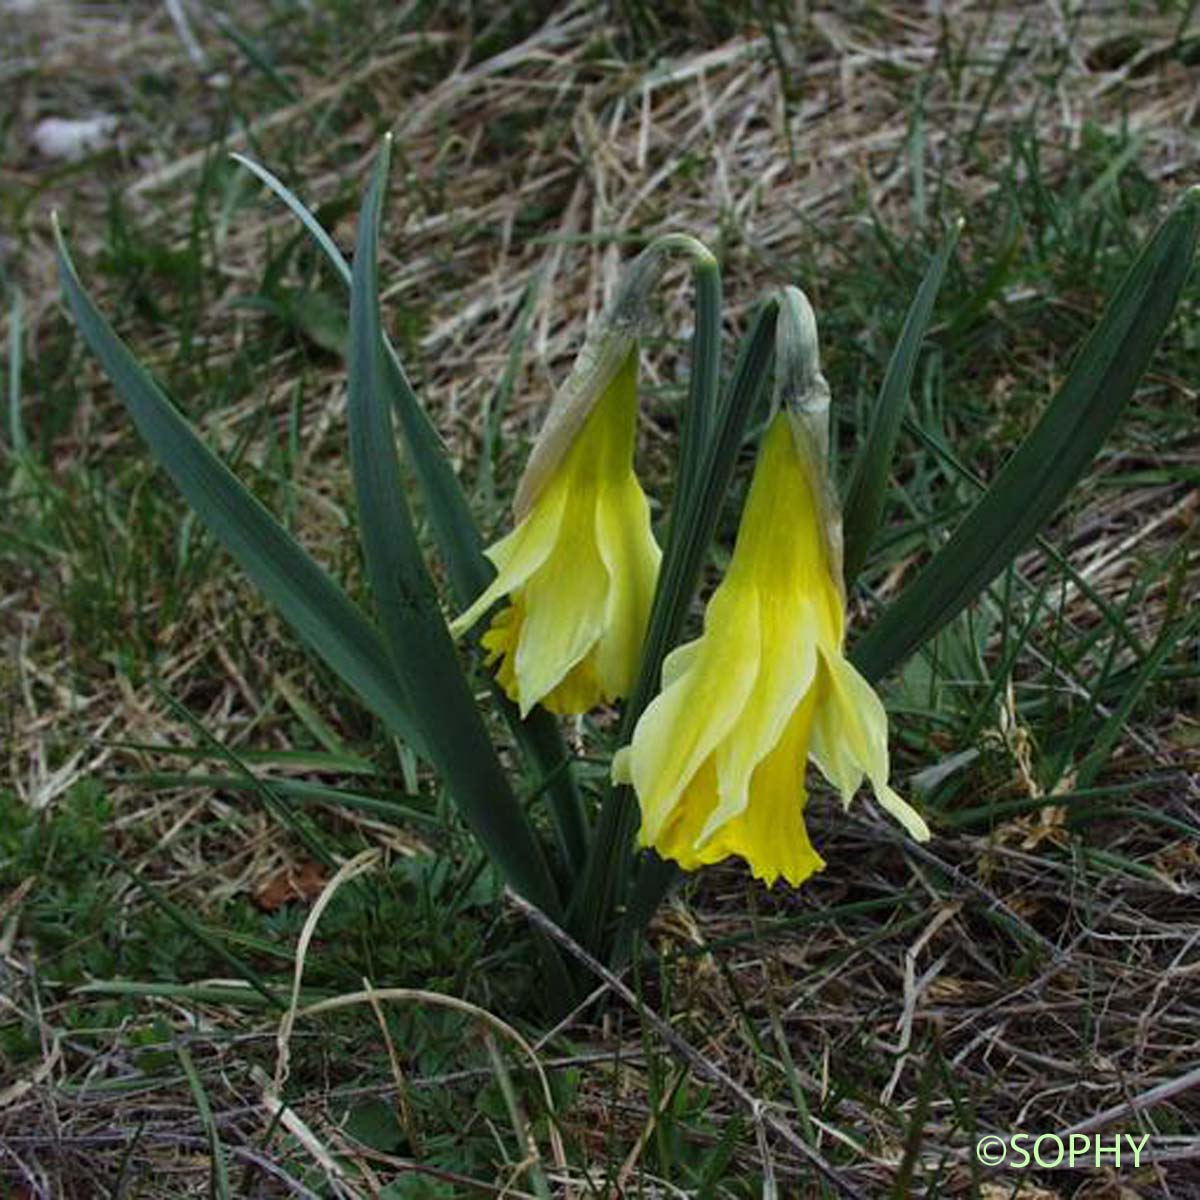 Jonquille - Narcissus jonquilla subsp. jonquilla